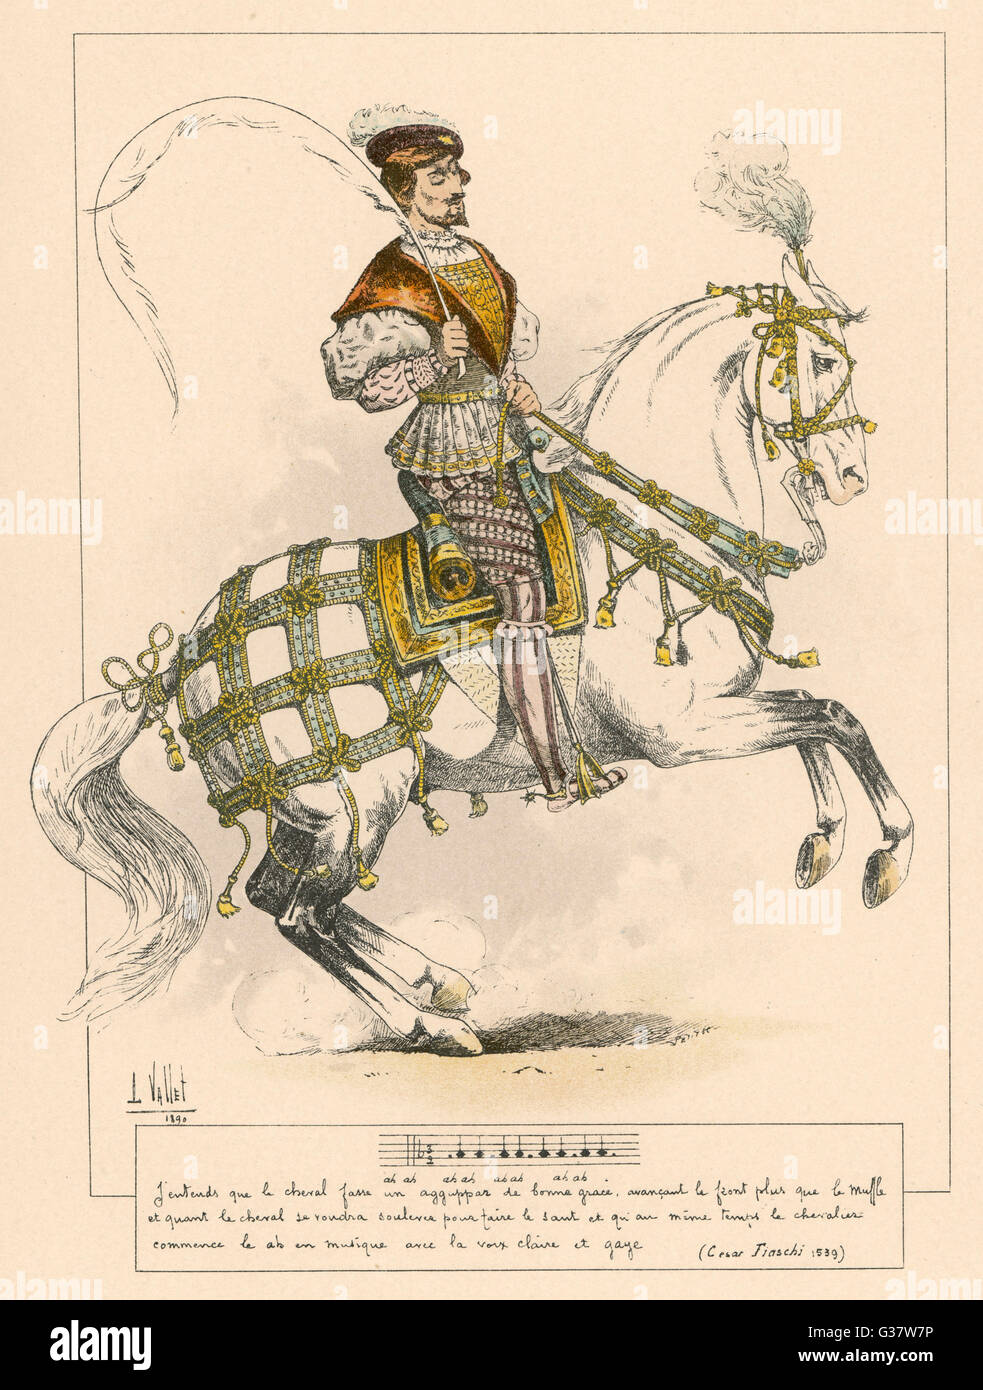 César Fiaschi - ecuestre y autor de libros de equitación. Fecha: floreció 1539 Foto de stock